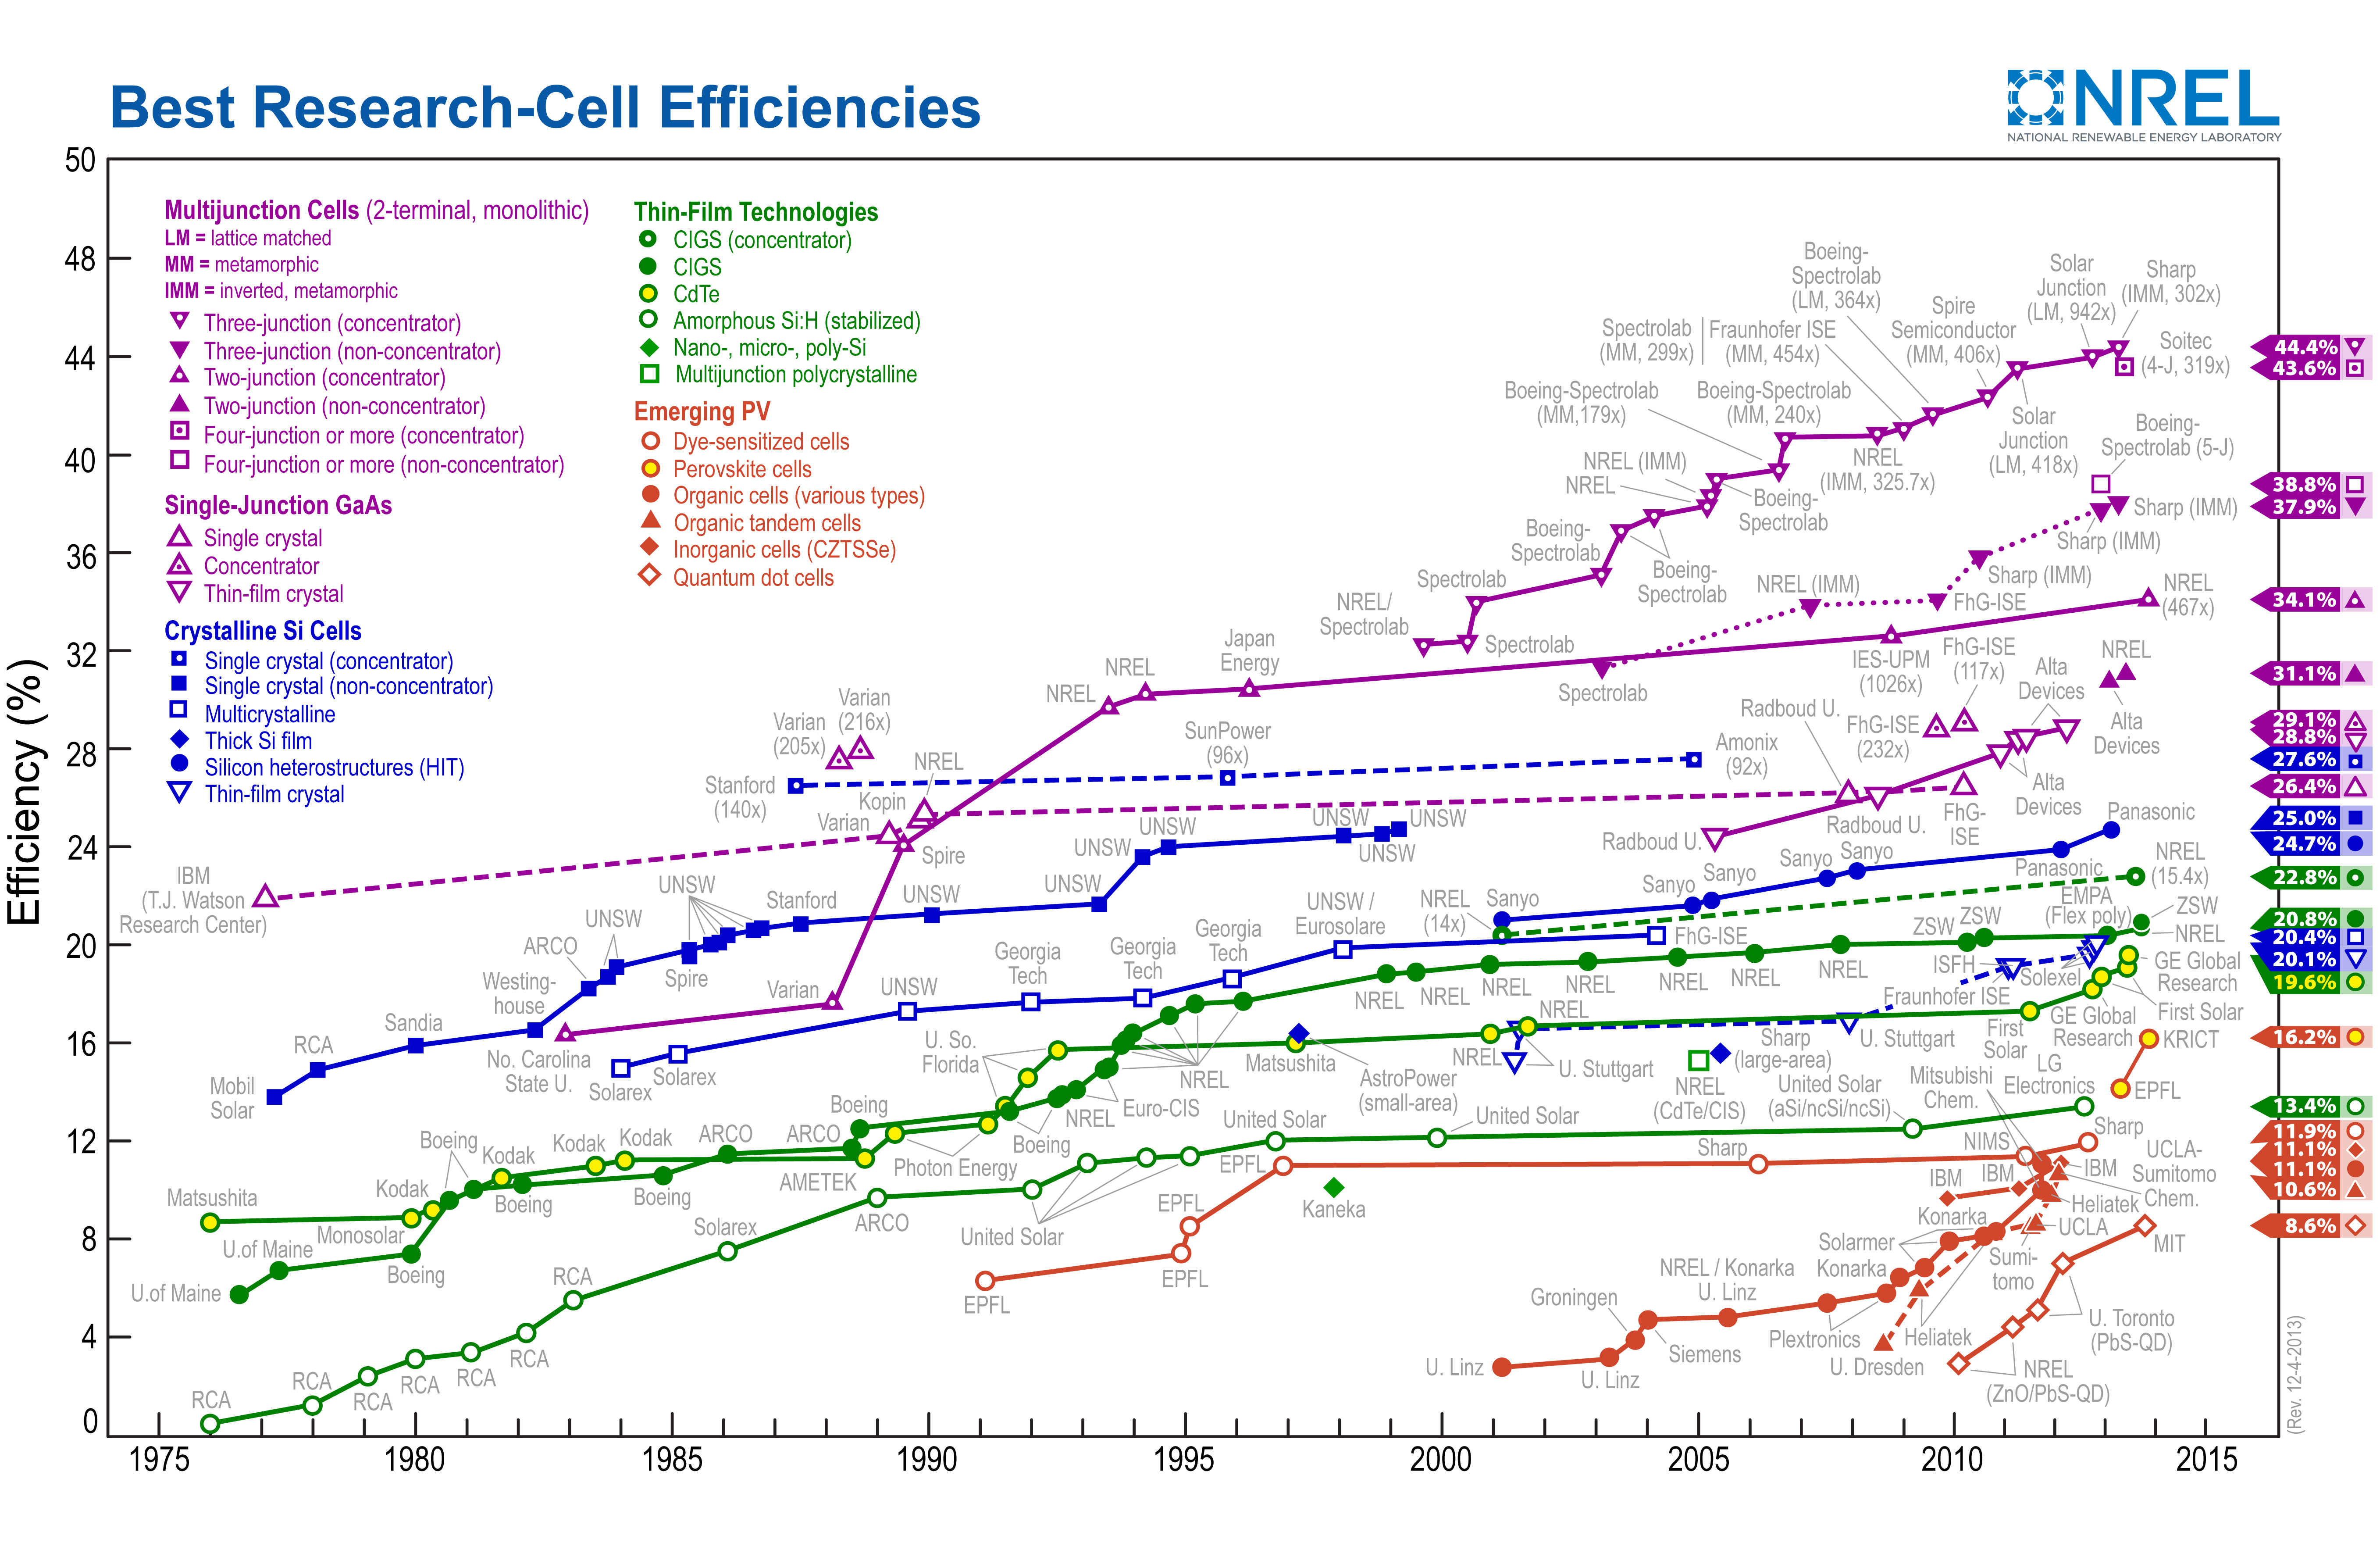 Grafik perkembangan rekor efisiensi sel surya per 19 Februari 2014